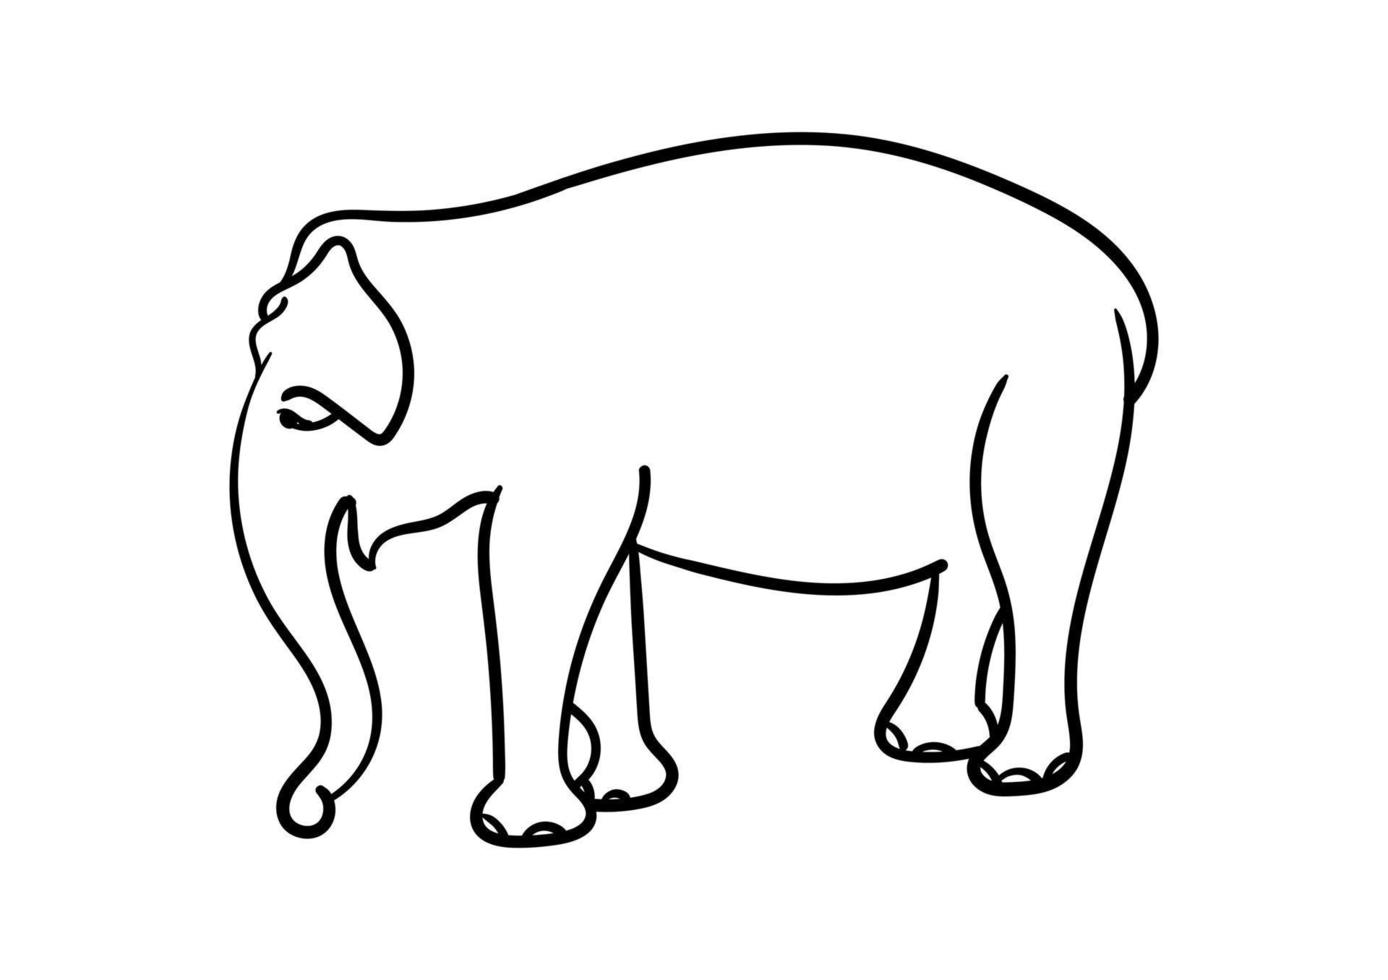 semplice disegno a mano di elefante vettore